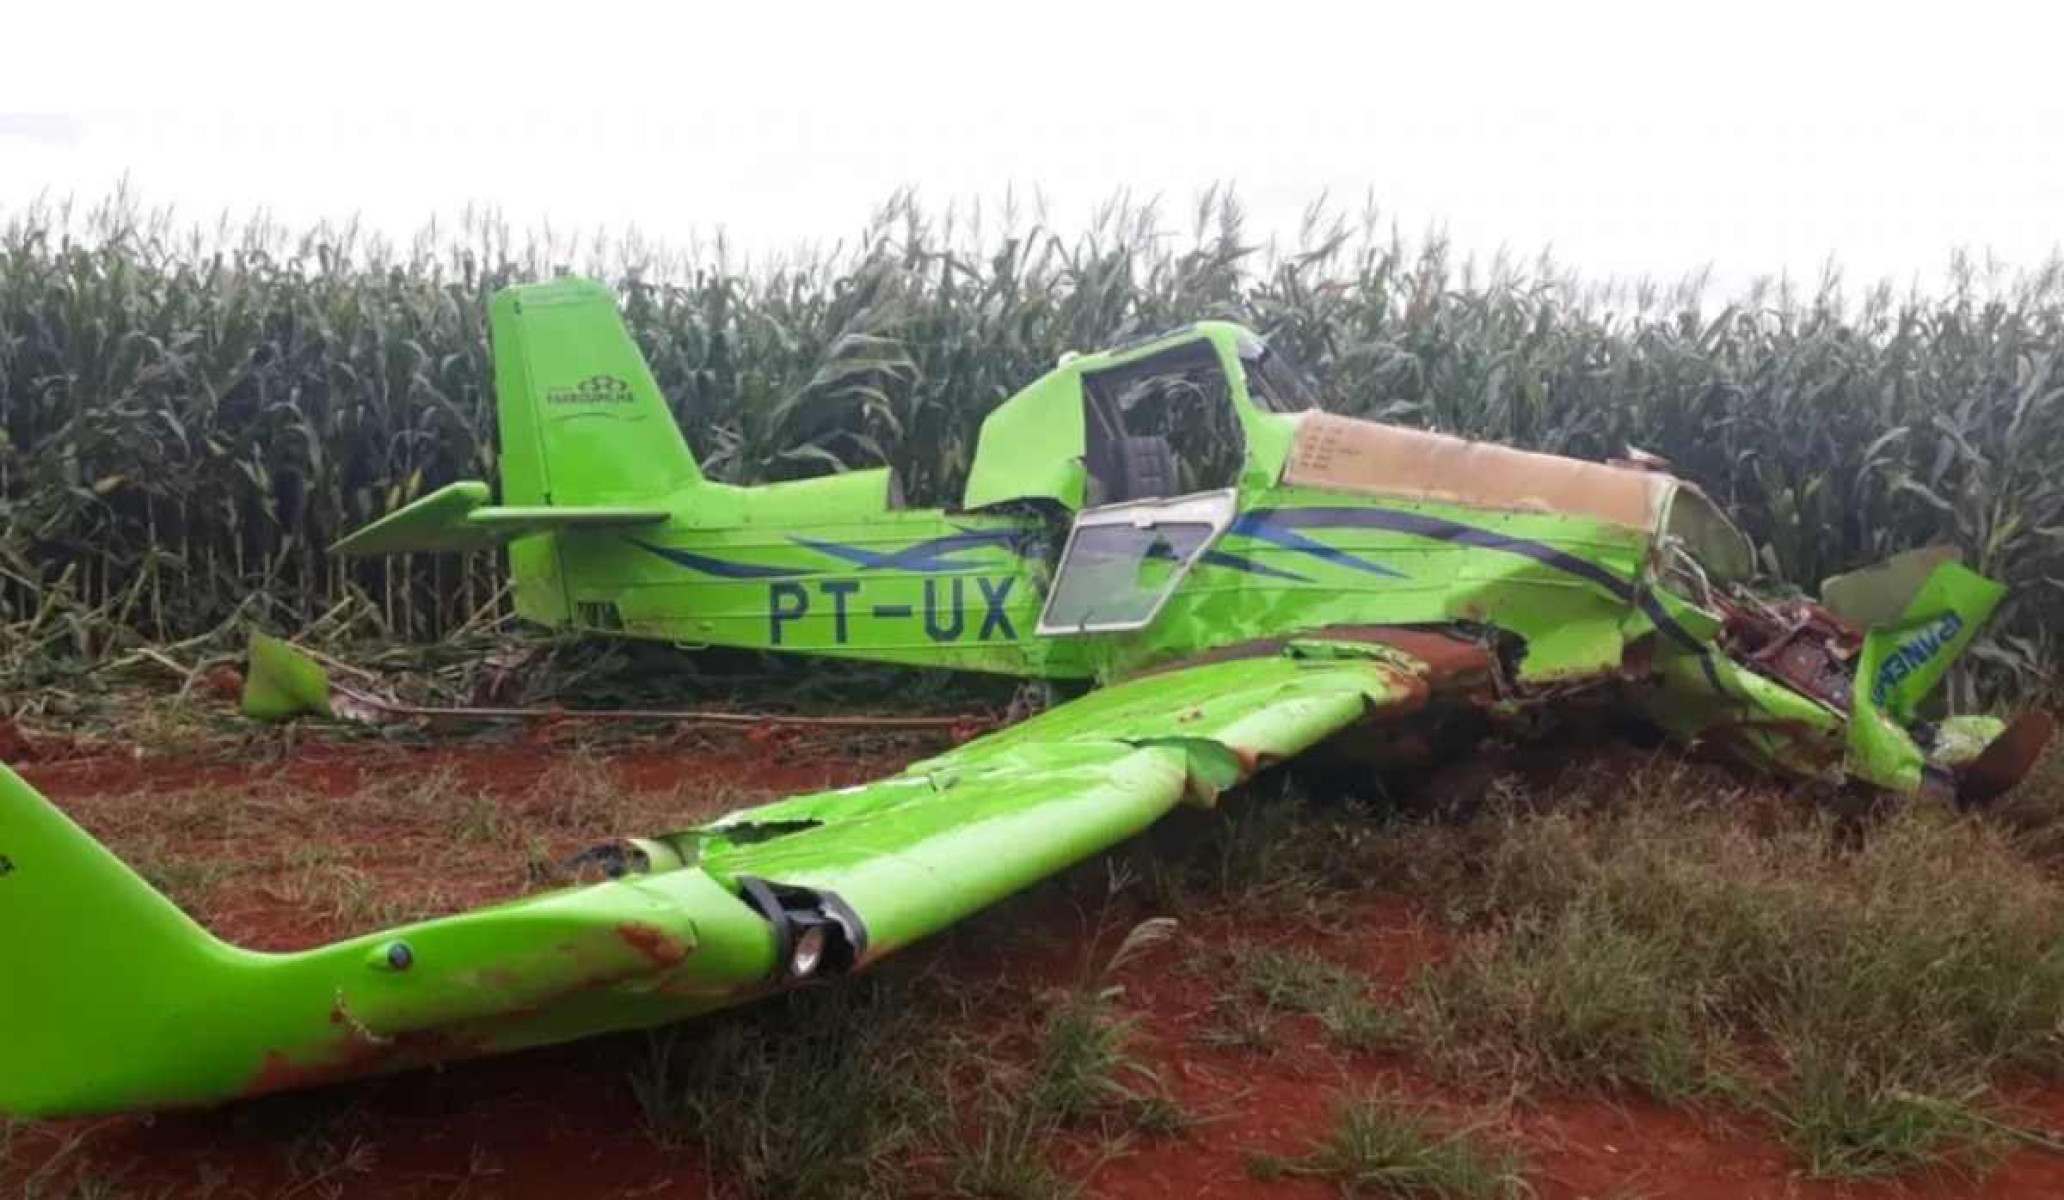 Presidente do Grupo Farroupilha é indiciado por morte de piloto de avião